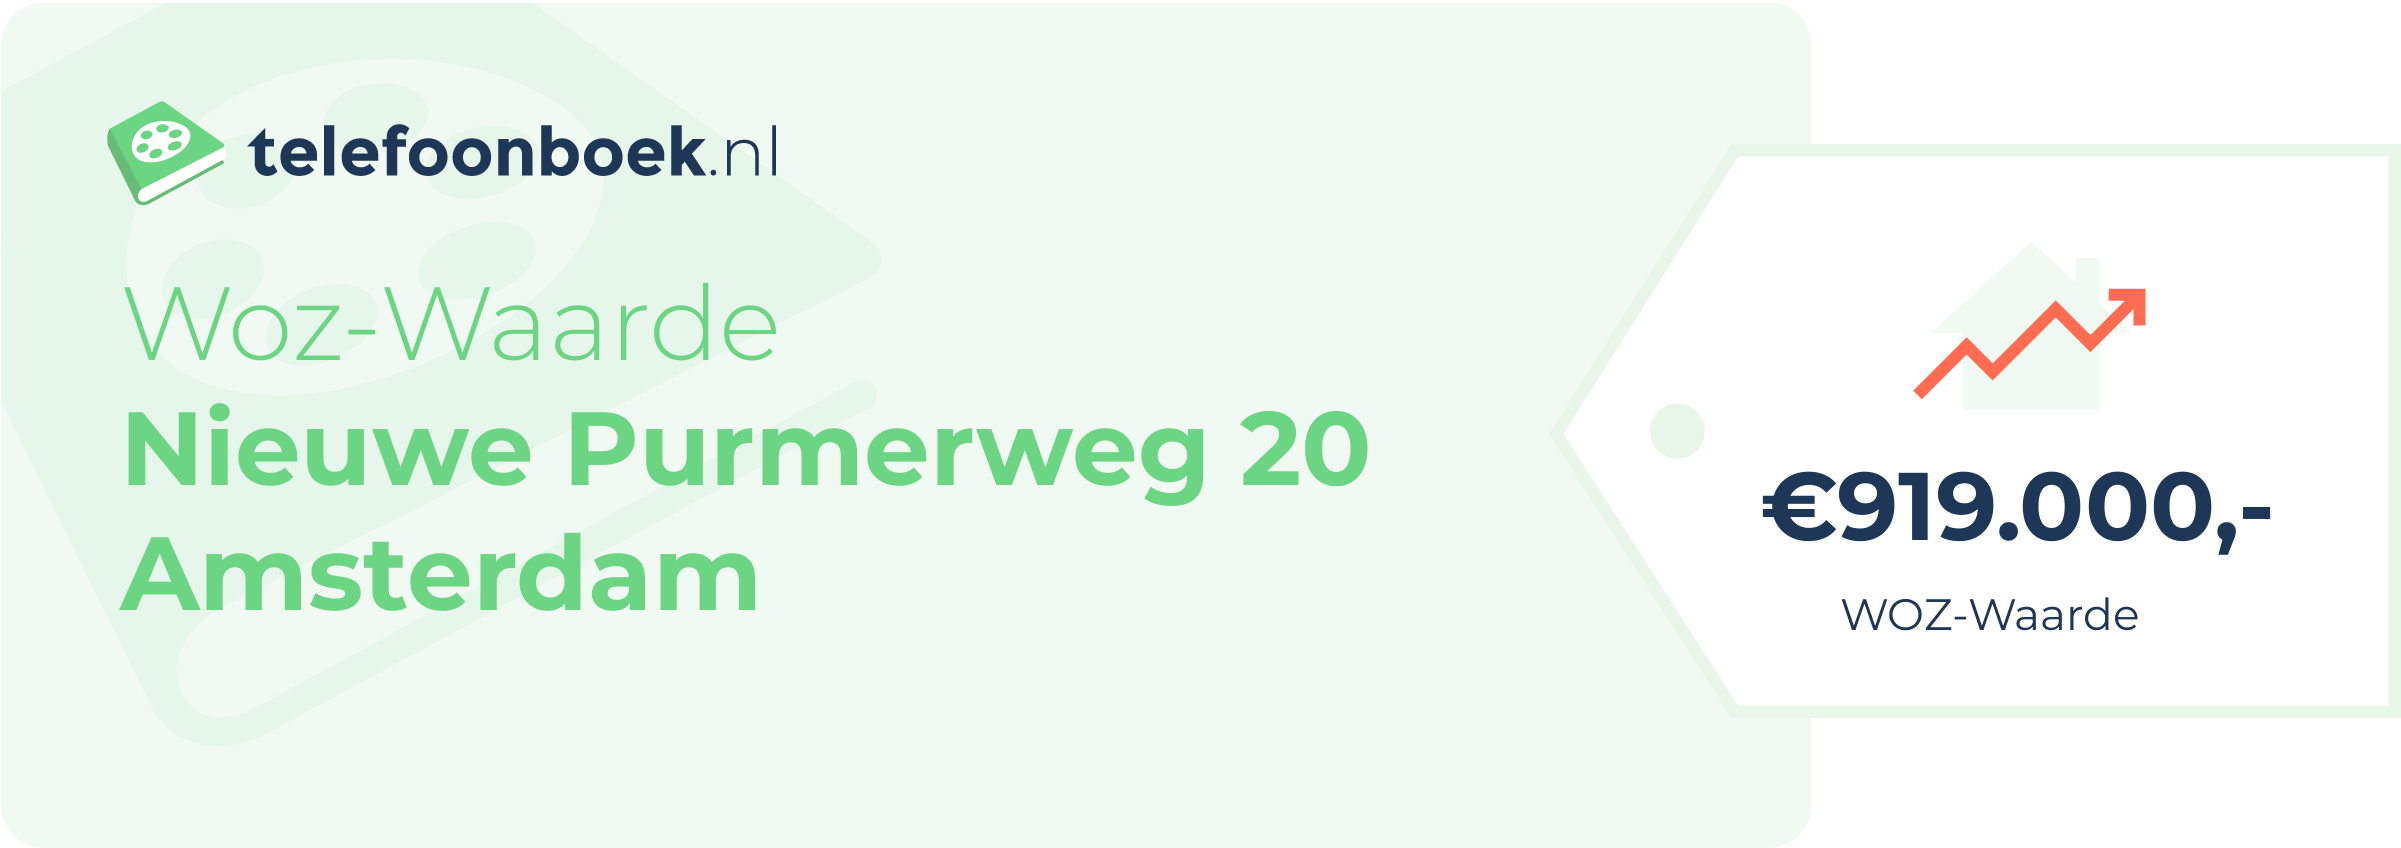 WOZ-waarde Nieuwe Purmerweg 20 Amsterdam